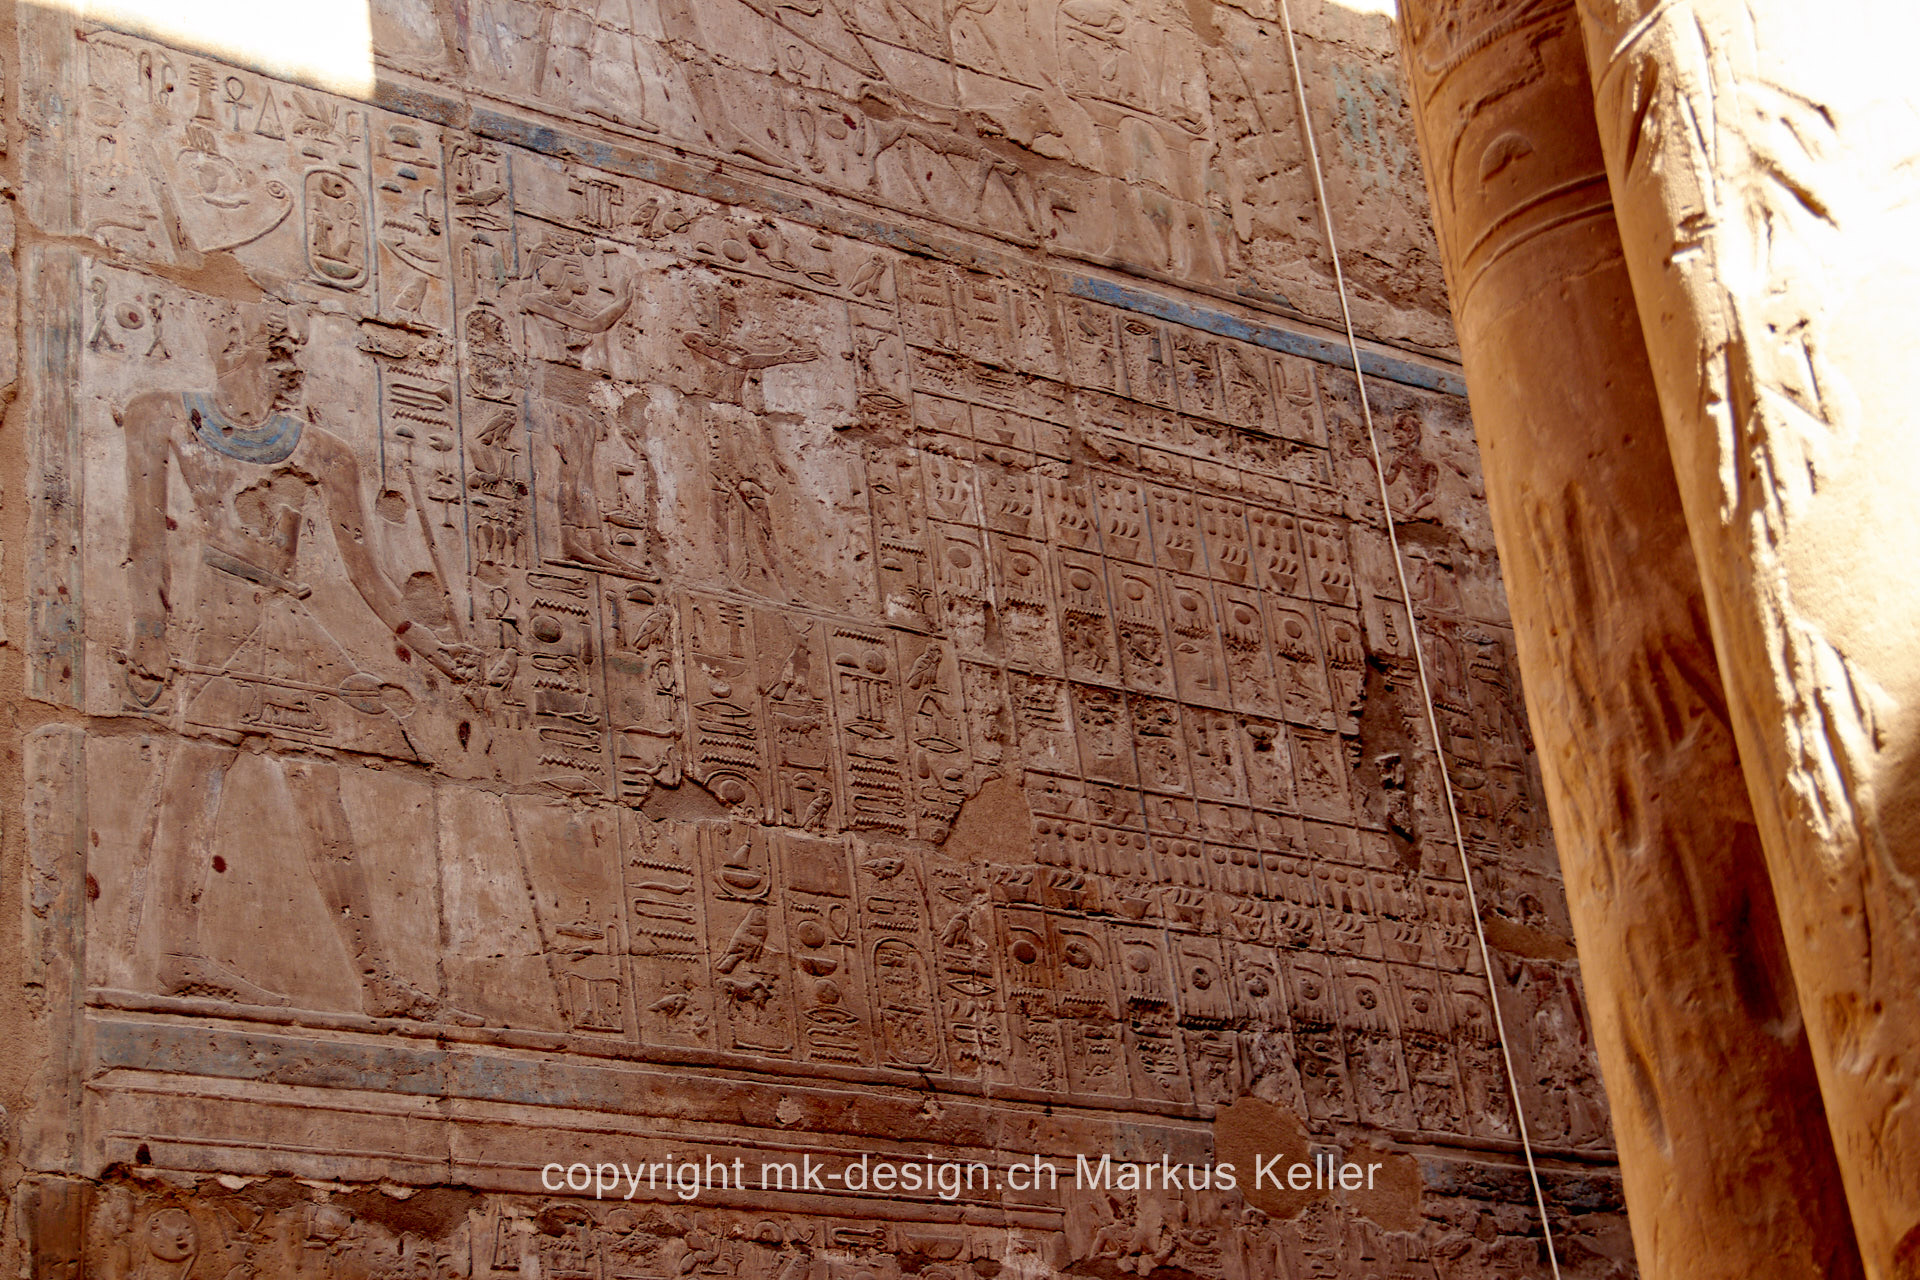 Bauwerk   Tempel   Luxor   